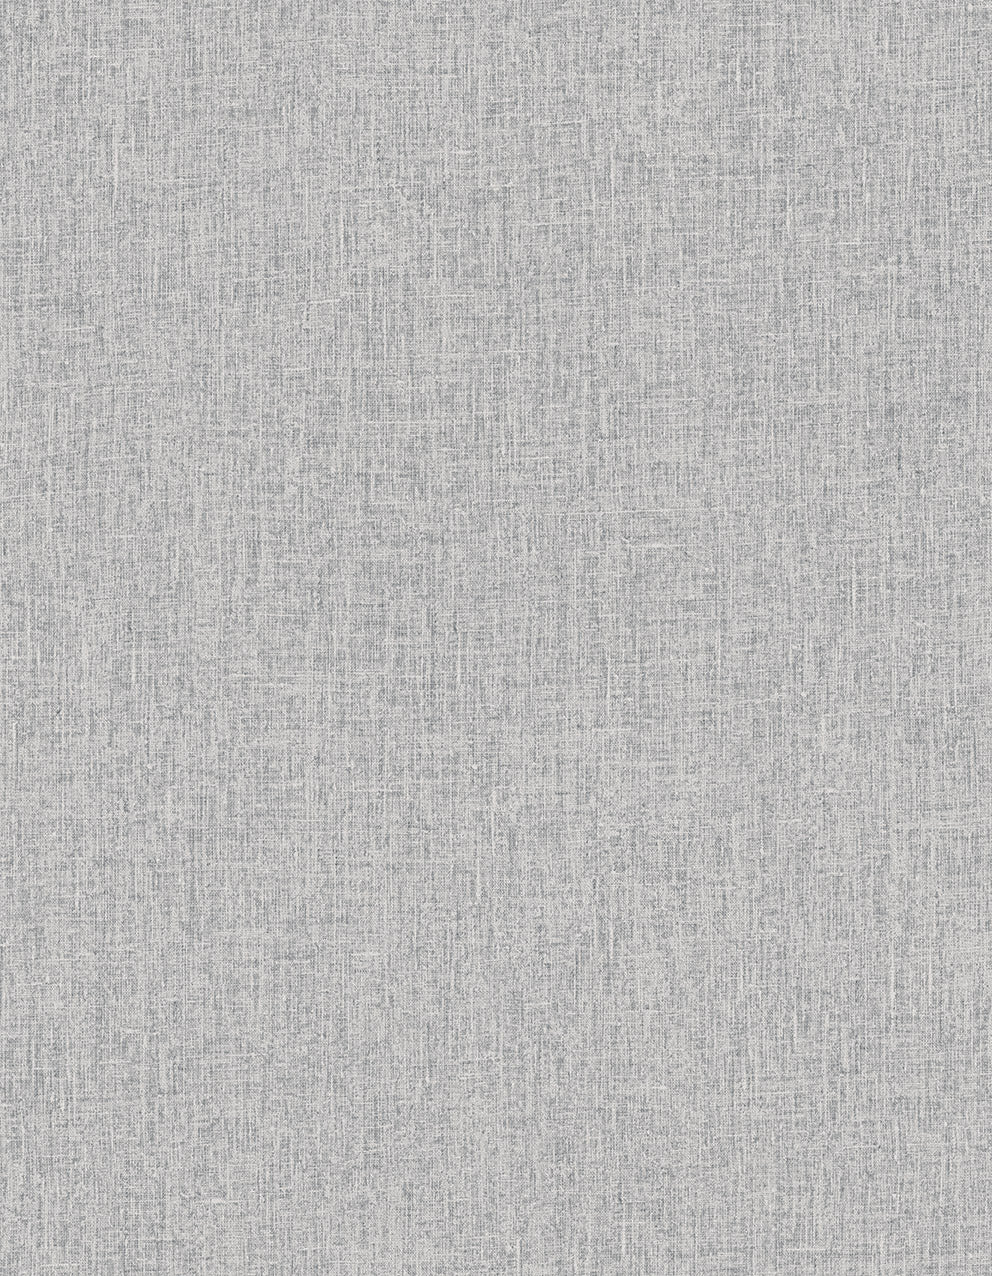 Cromie Linen-look Textured wallpaper